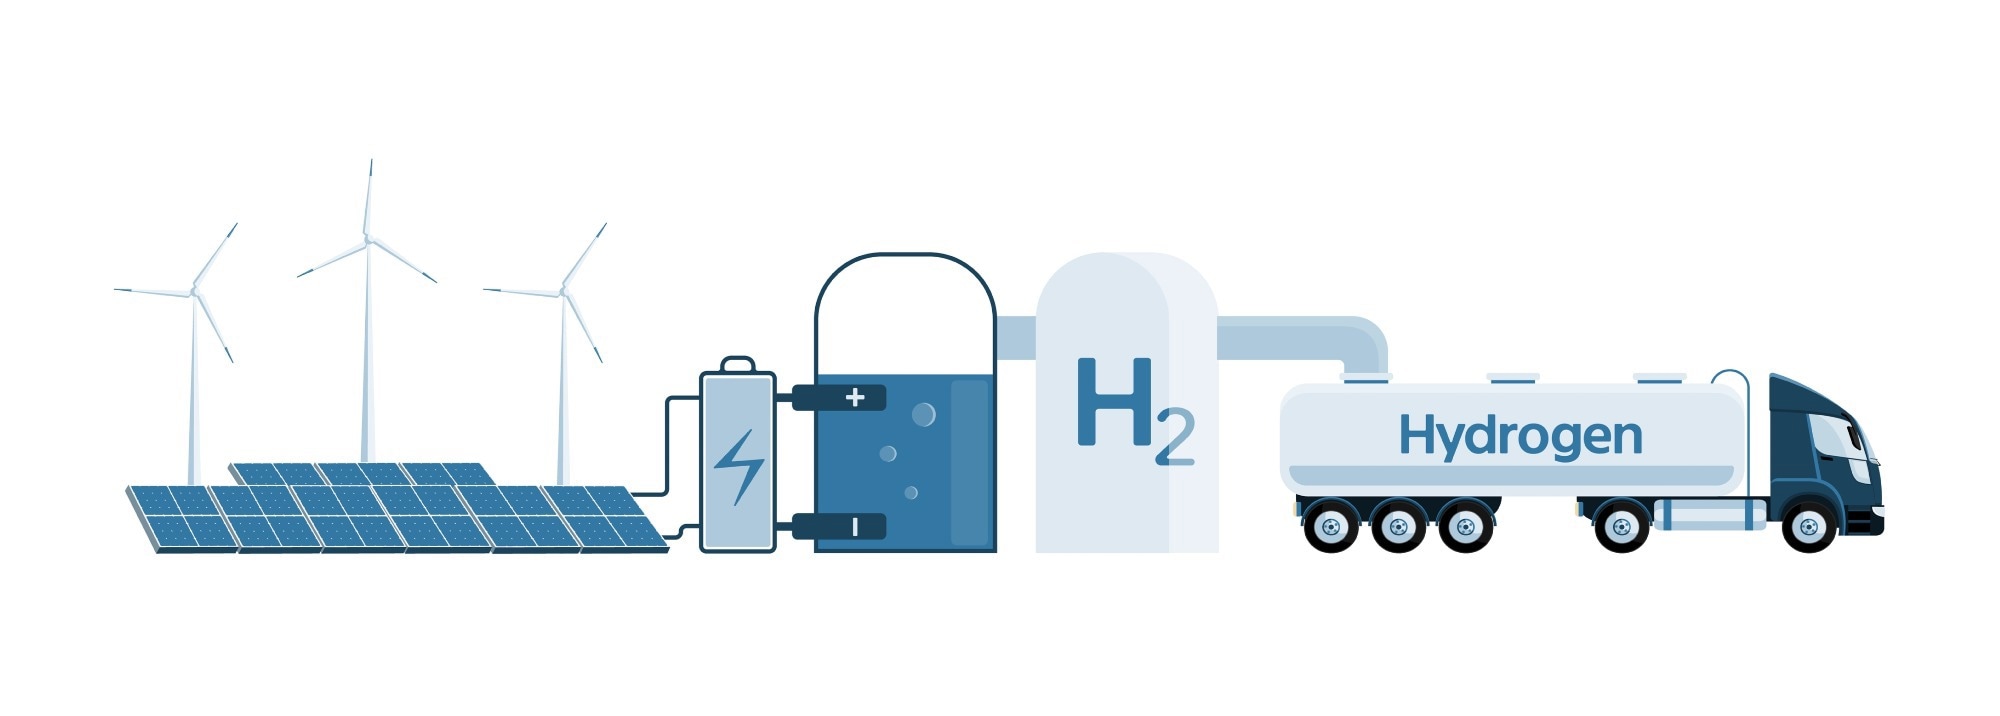 green hydrogen, hydrogen, energy storage